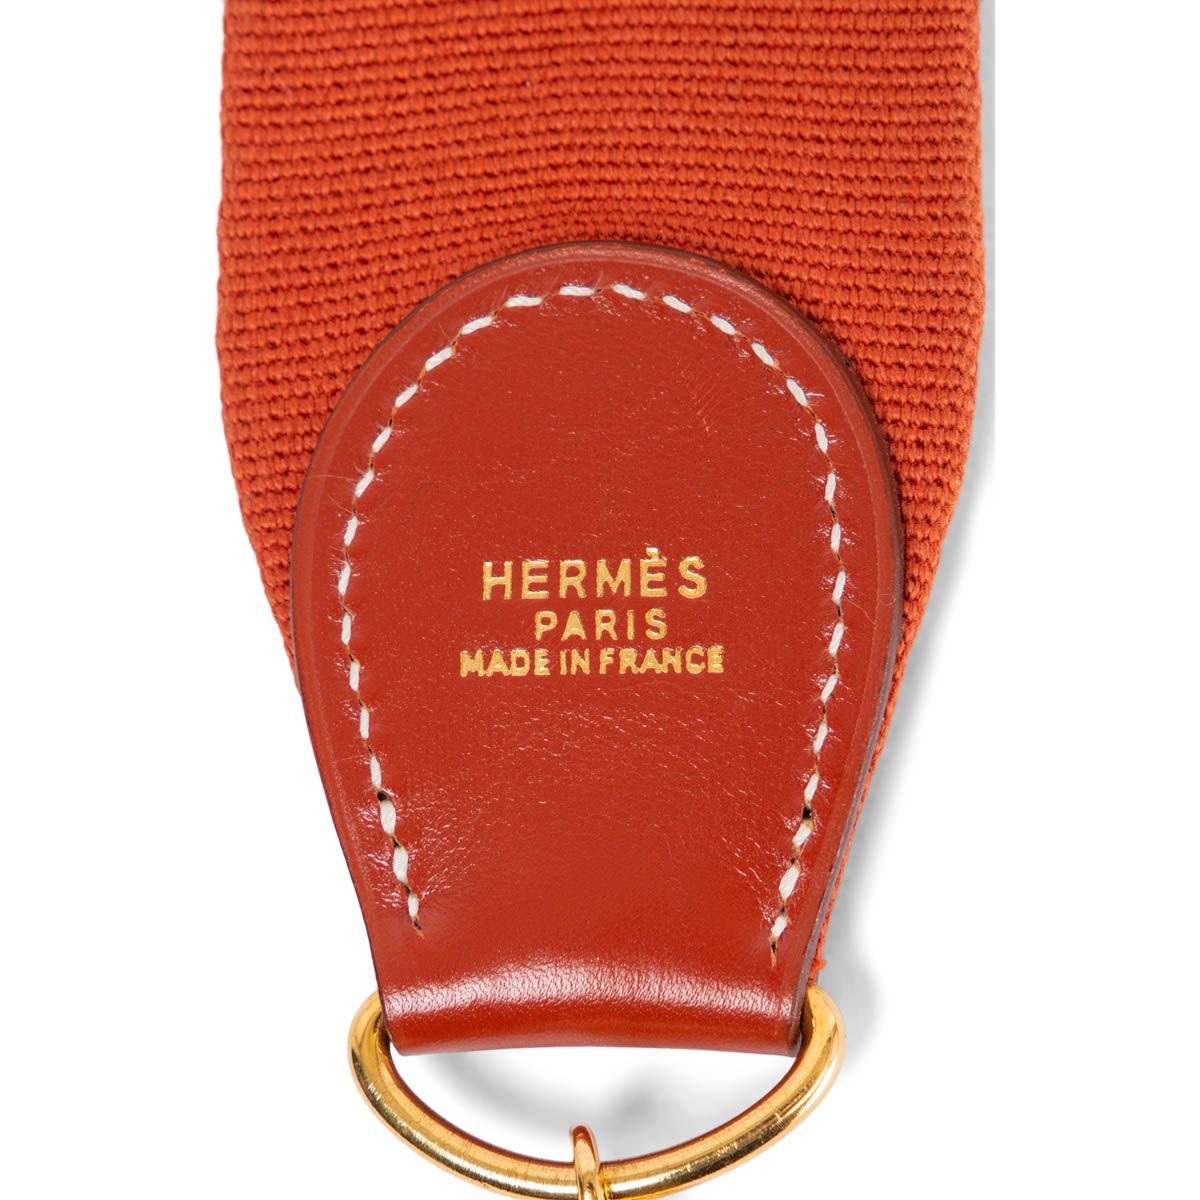 hermes canvas bag strap